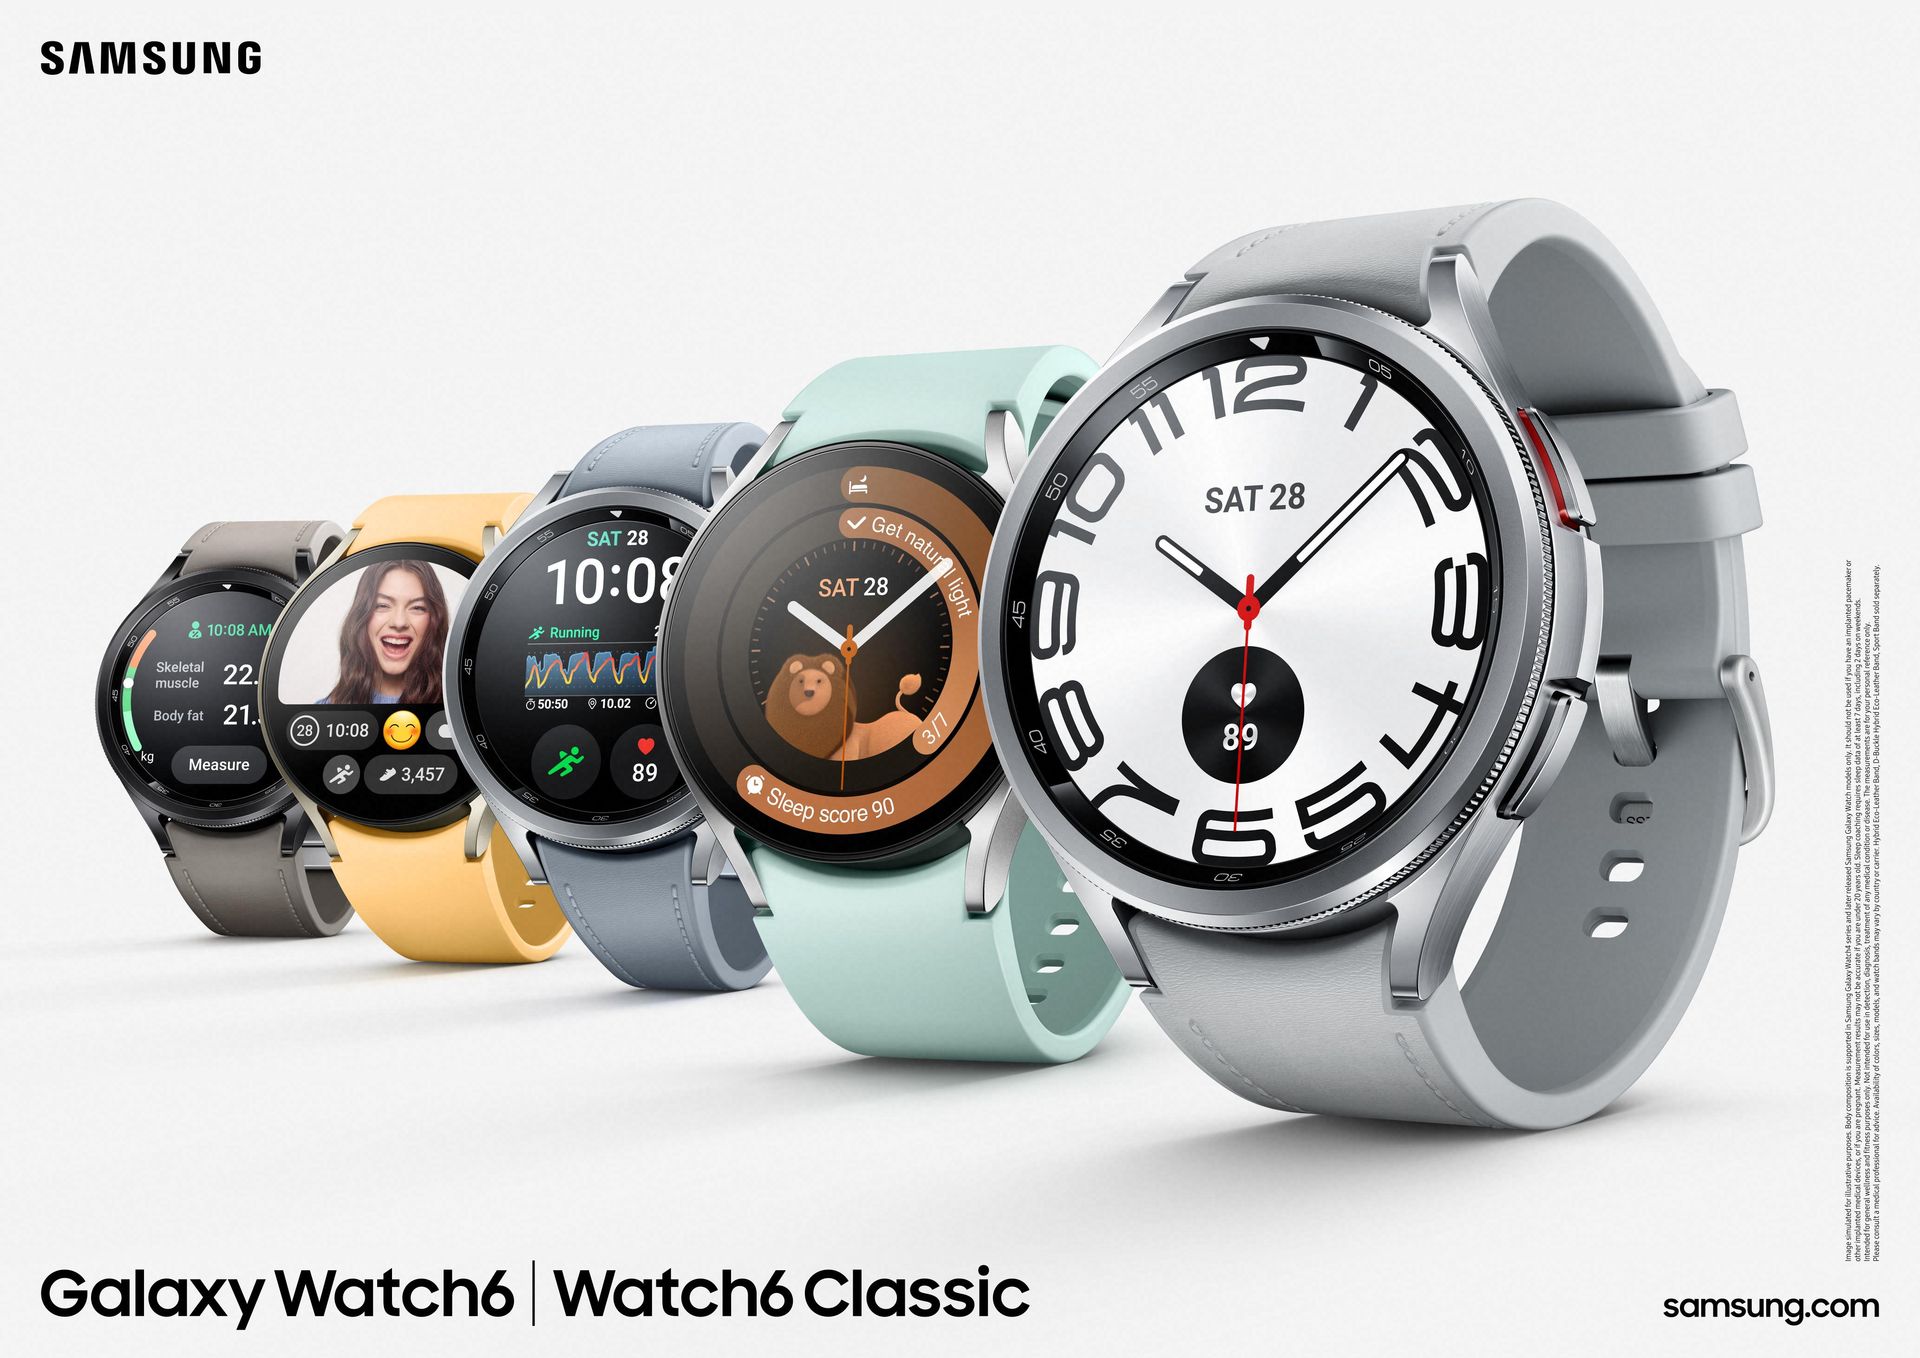 サムスン、スマートウォッチ「Galaxy Watch6/Watch6 Classic」を発表